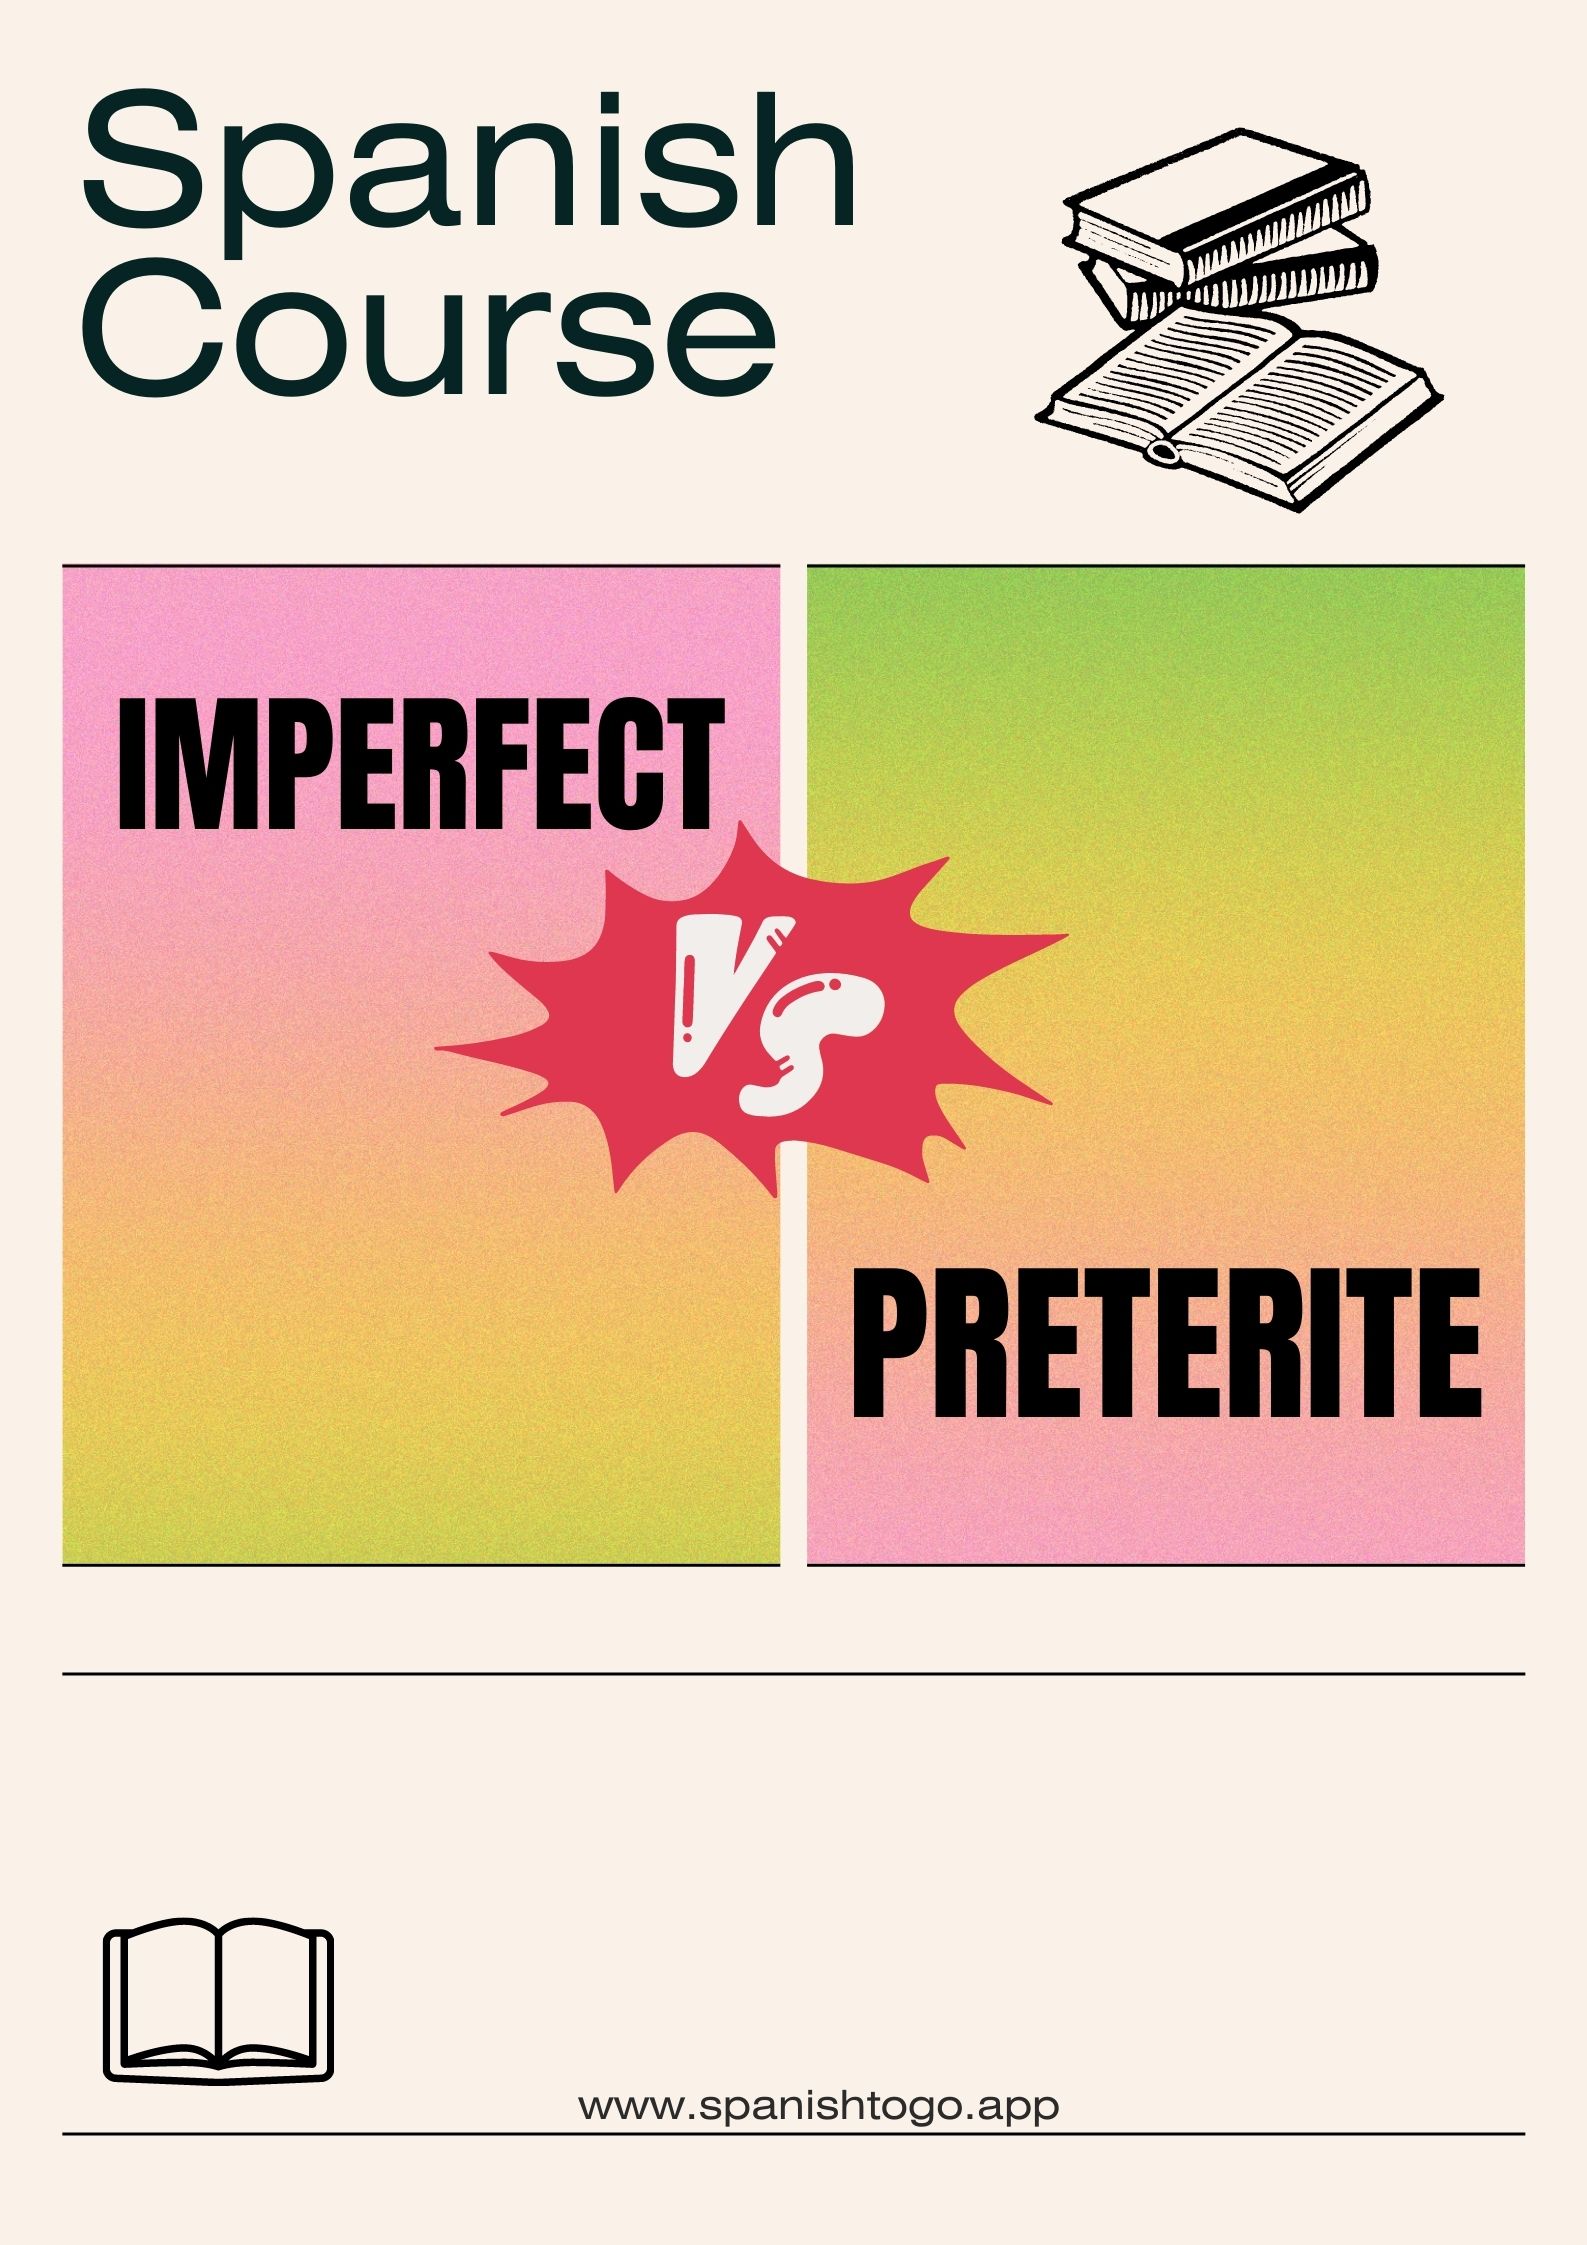 Imperfect Vs Preterite in Spanish